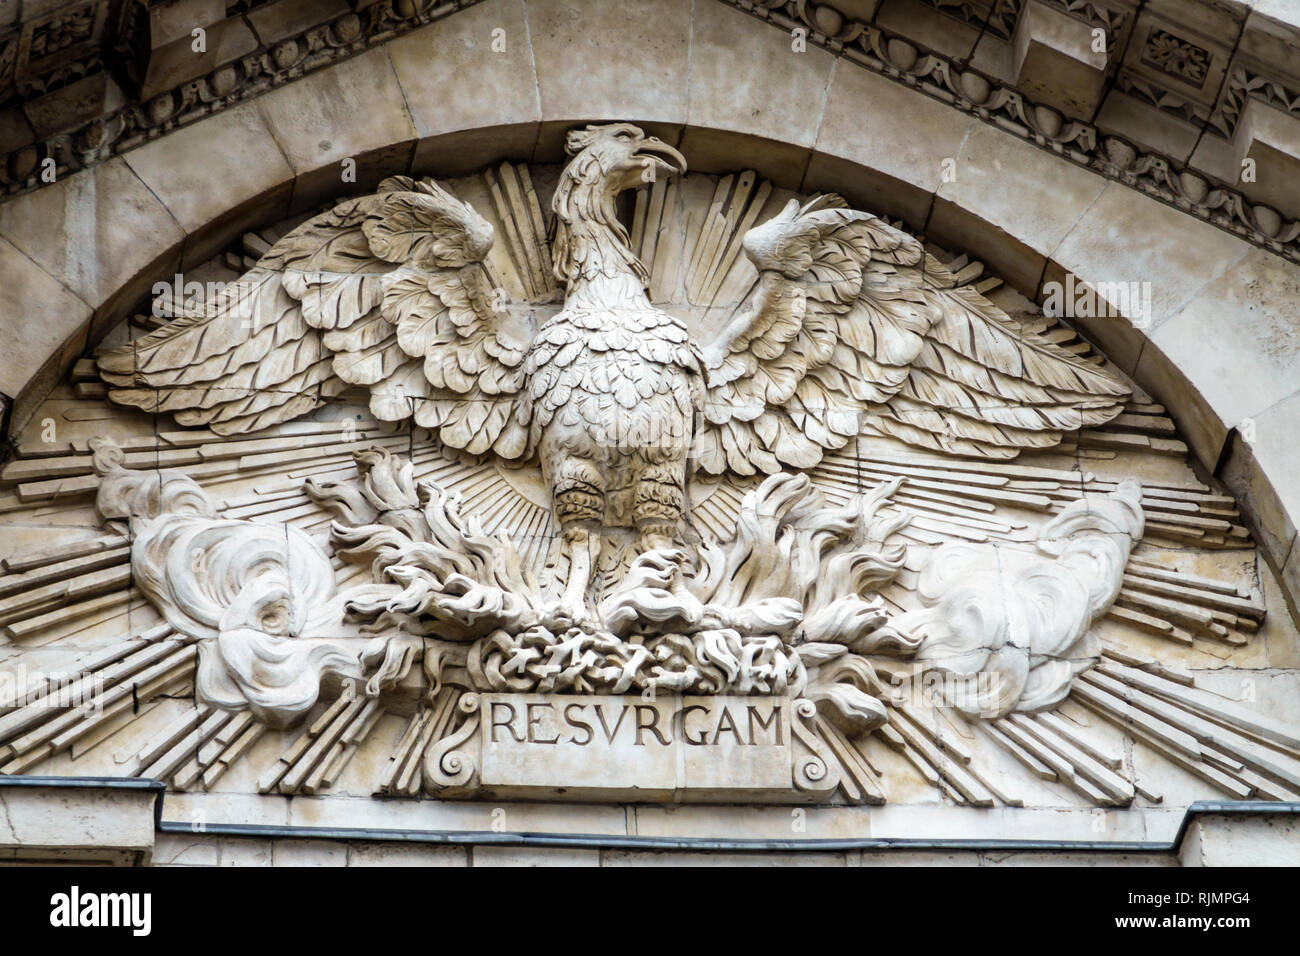 Vereinigtes Königreich Großbritannien England City of London Paternoster Architectural Dekorative Skulptur phoenix Statue Mythologie Lateinisches Wort Resurgam Stockfoto